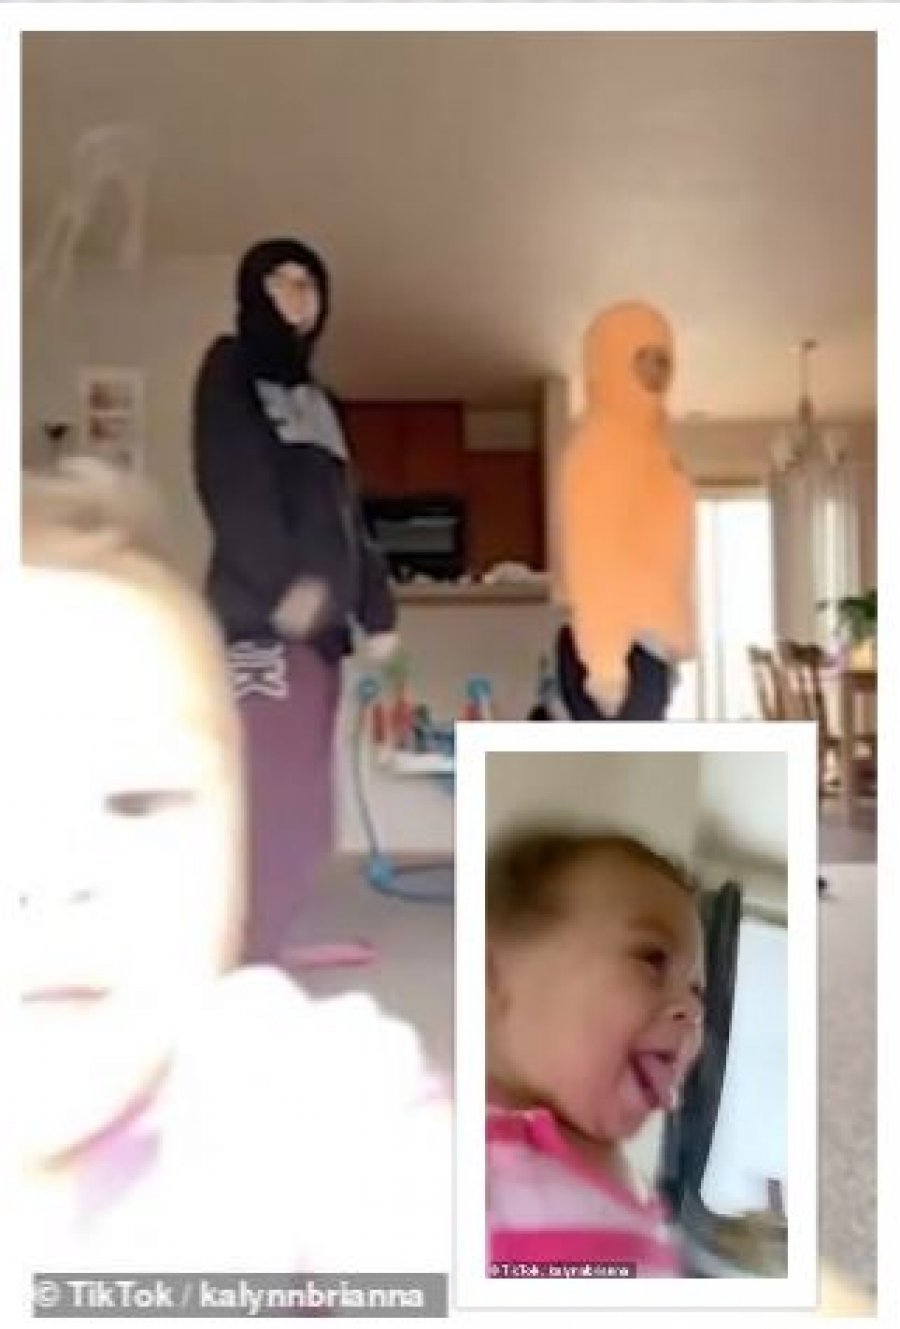 VIDEO/ Momenti kur vogëlushja i merr telefonin nënës bëhet virale, shënon rekord klikimesh